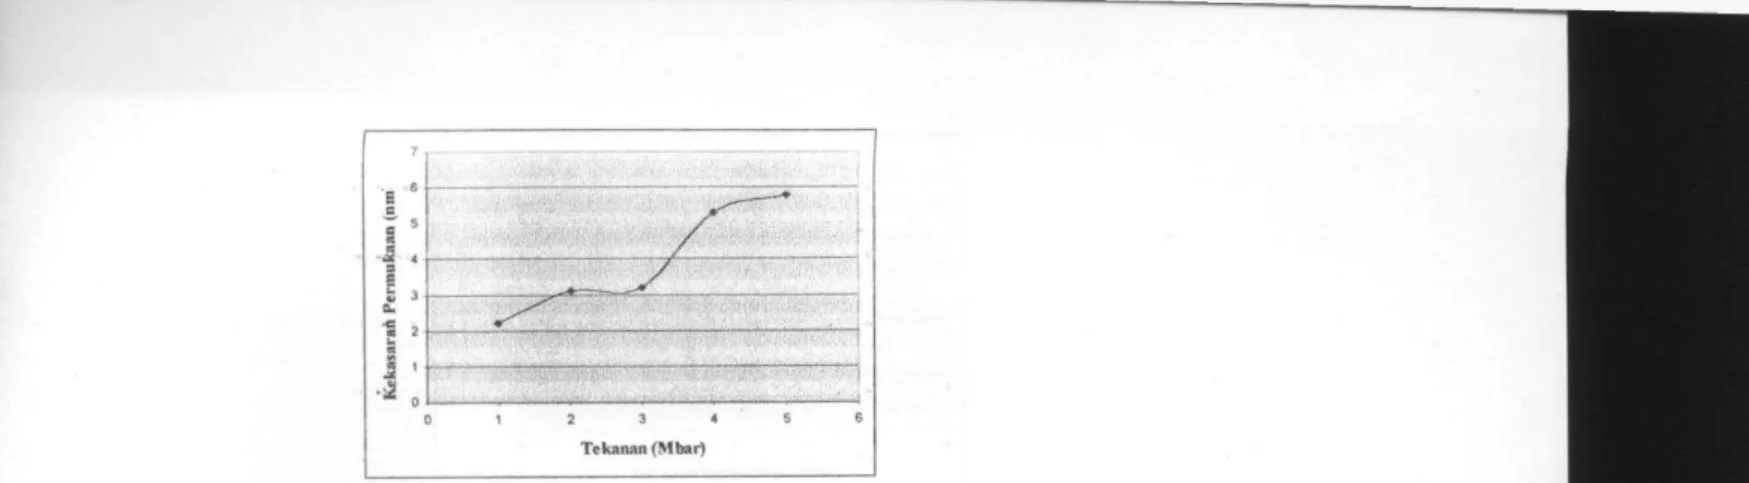 Gambar berikut  i n i menunjukkan grafik hubungan antara tekanan sputtering pada saat  sampel dibuat dengan coercivitas